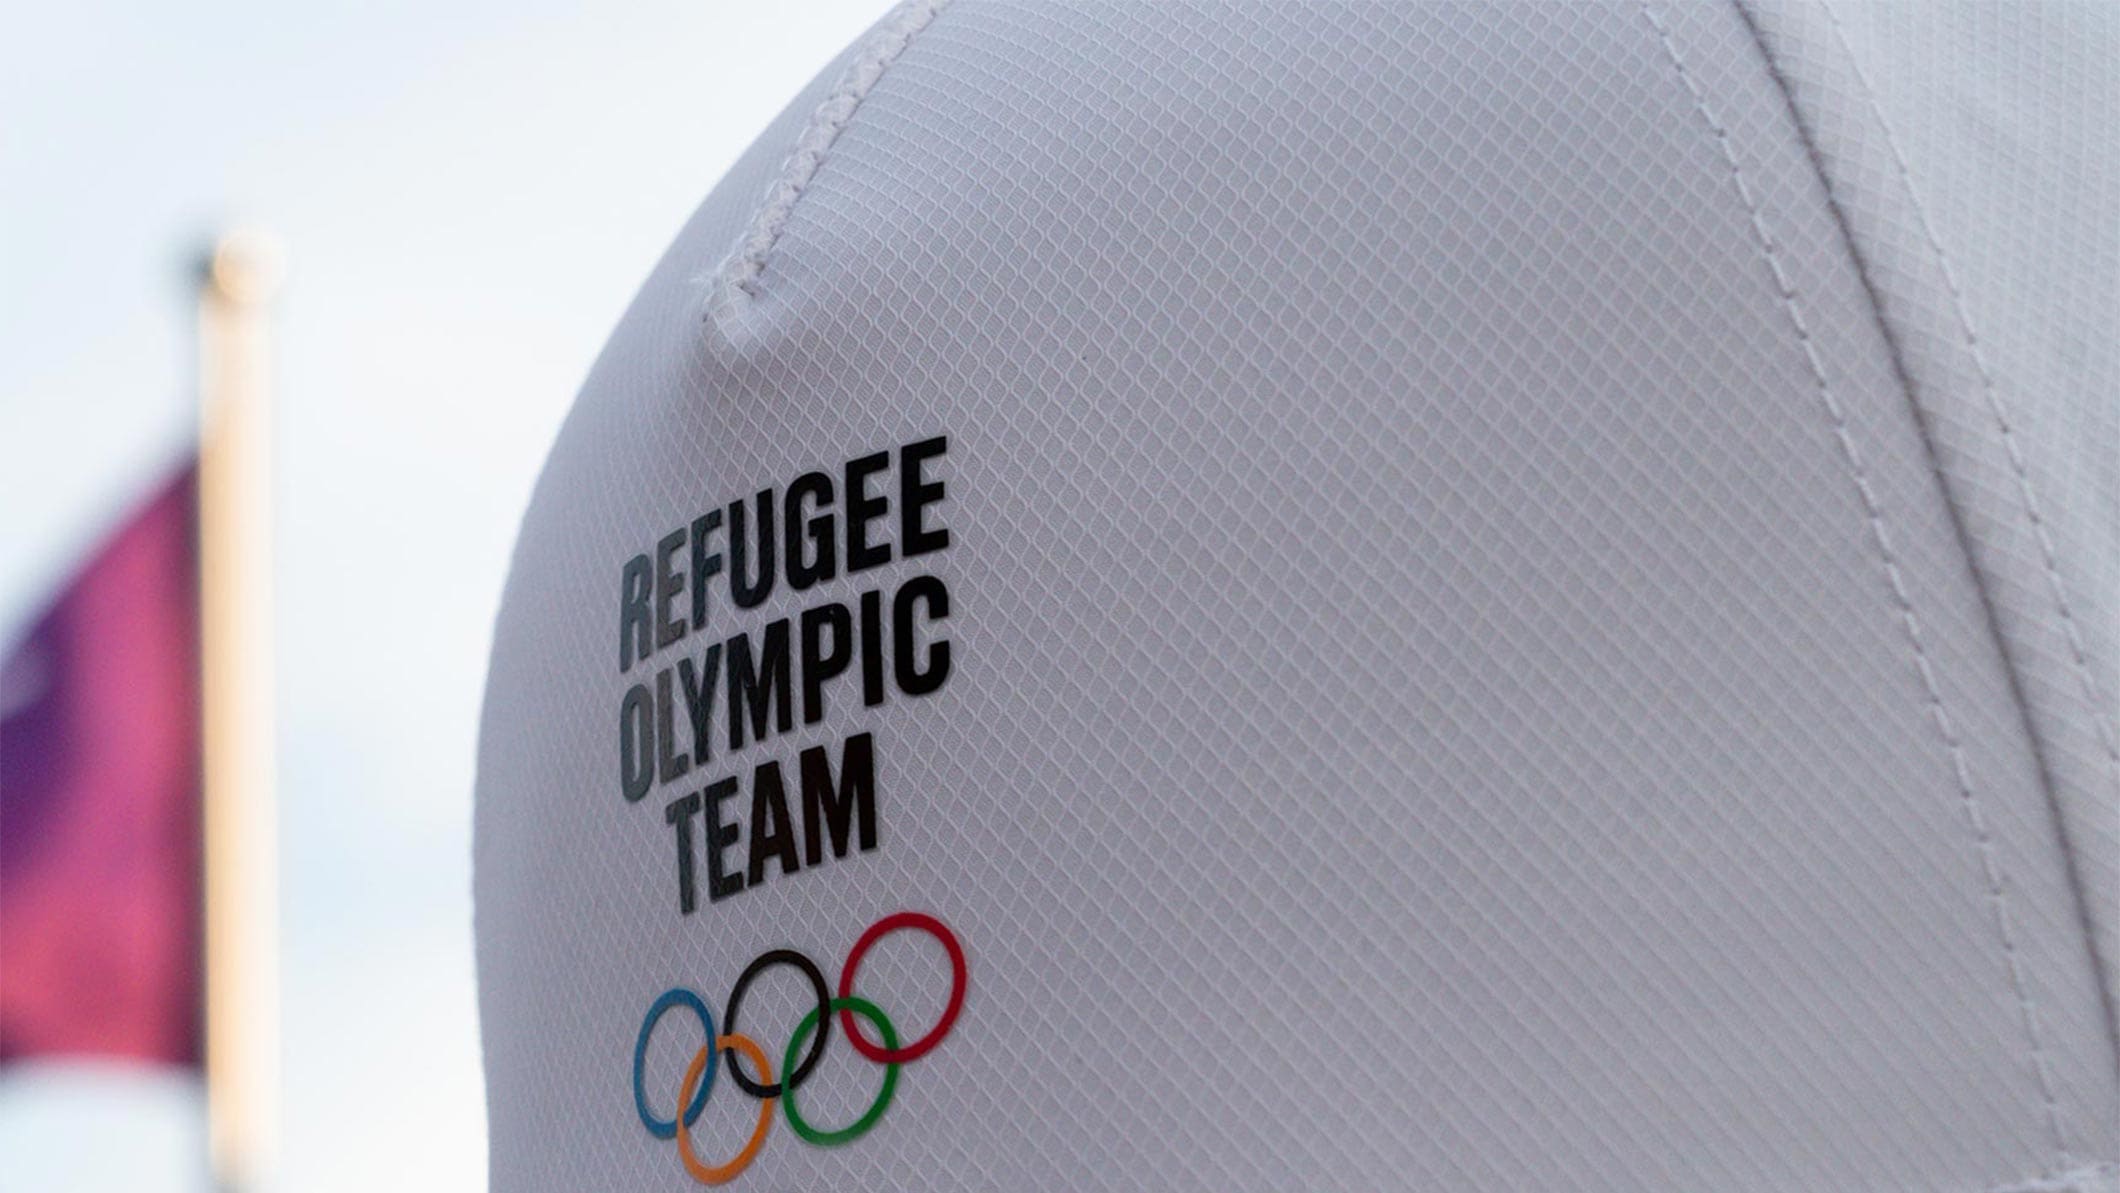 IOC Refugee Olympic Team Paris 2024